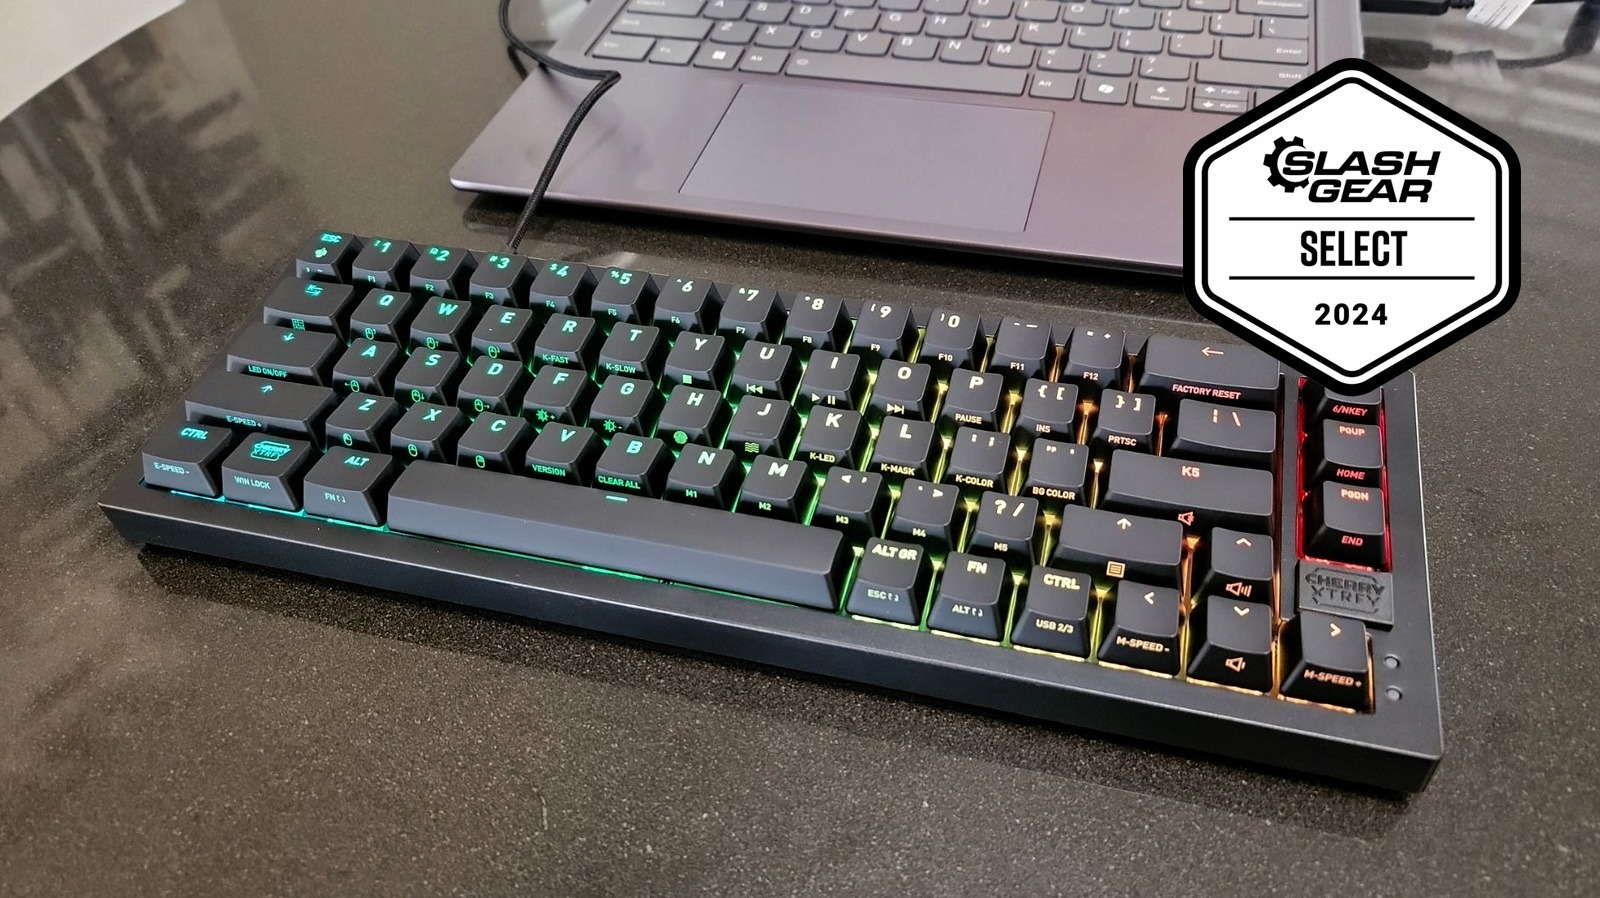 Un teclado compacto colorido, multifuncional, intercambiable en caliente